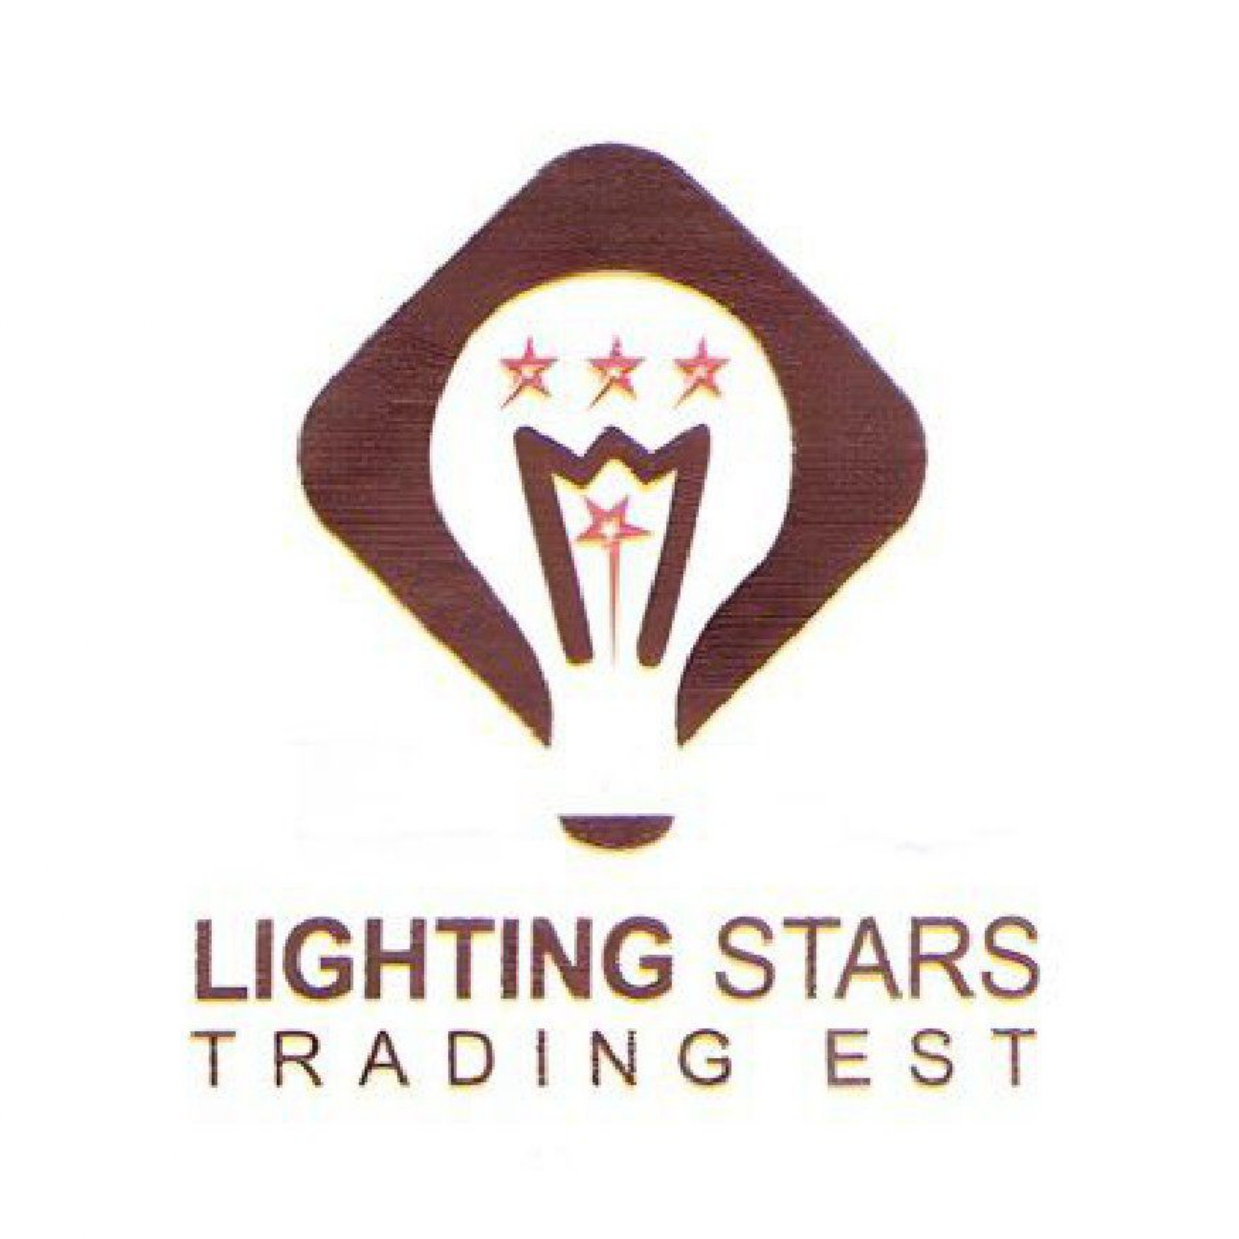 LIGHTING STARS logo